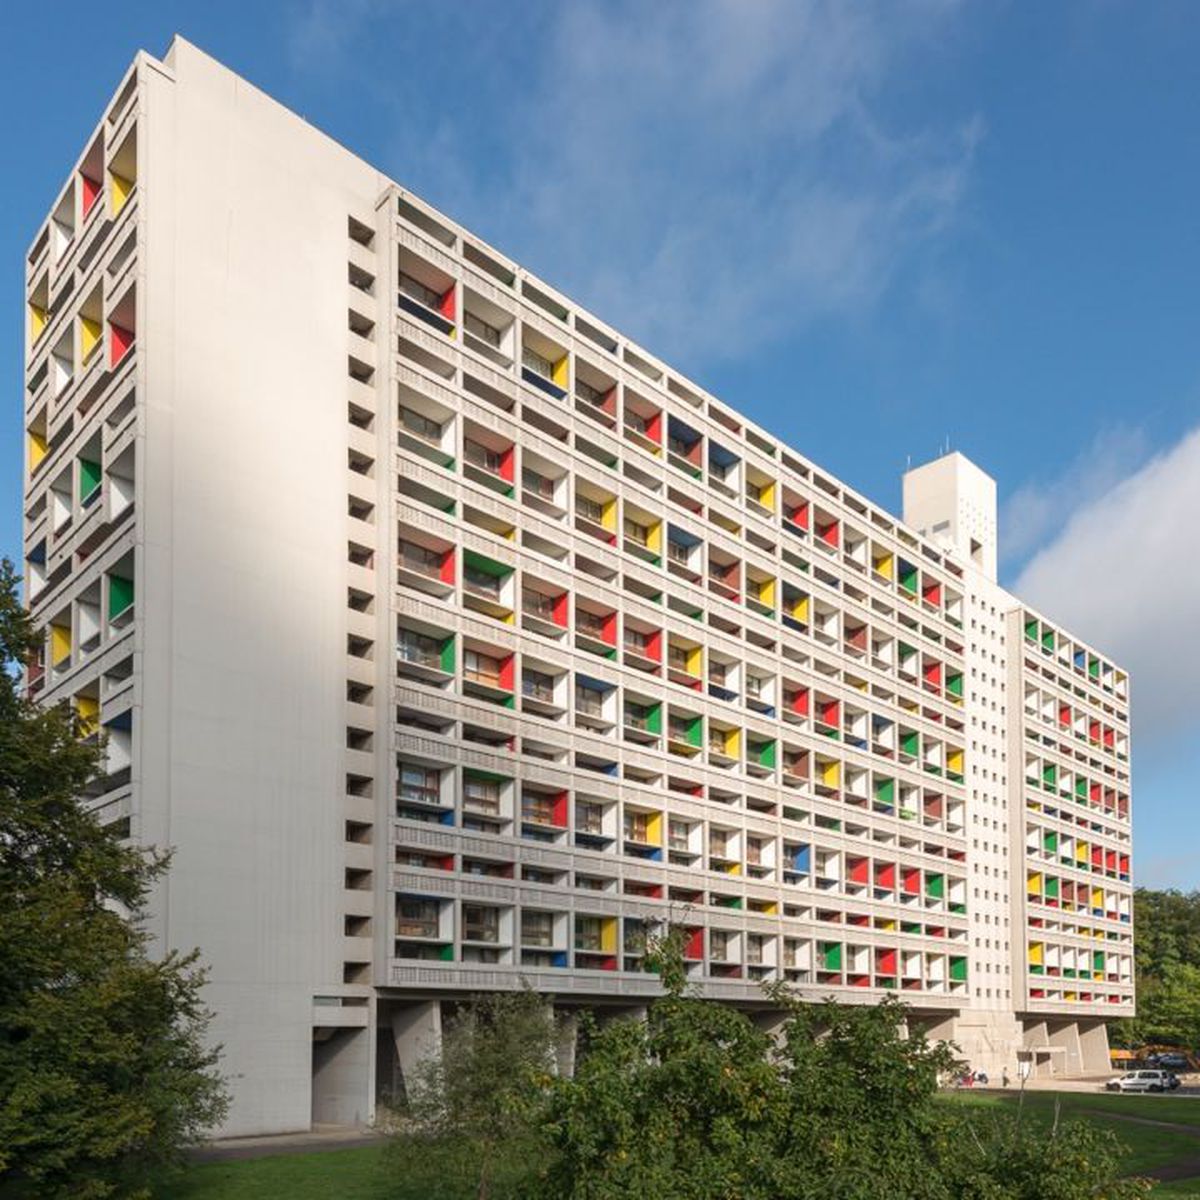 Cité Radieuse, Fransa, mimar Le Corbusier